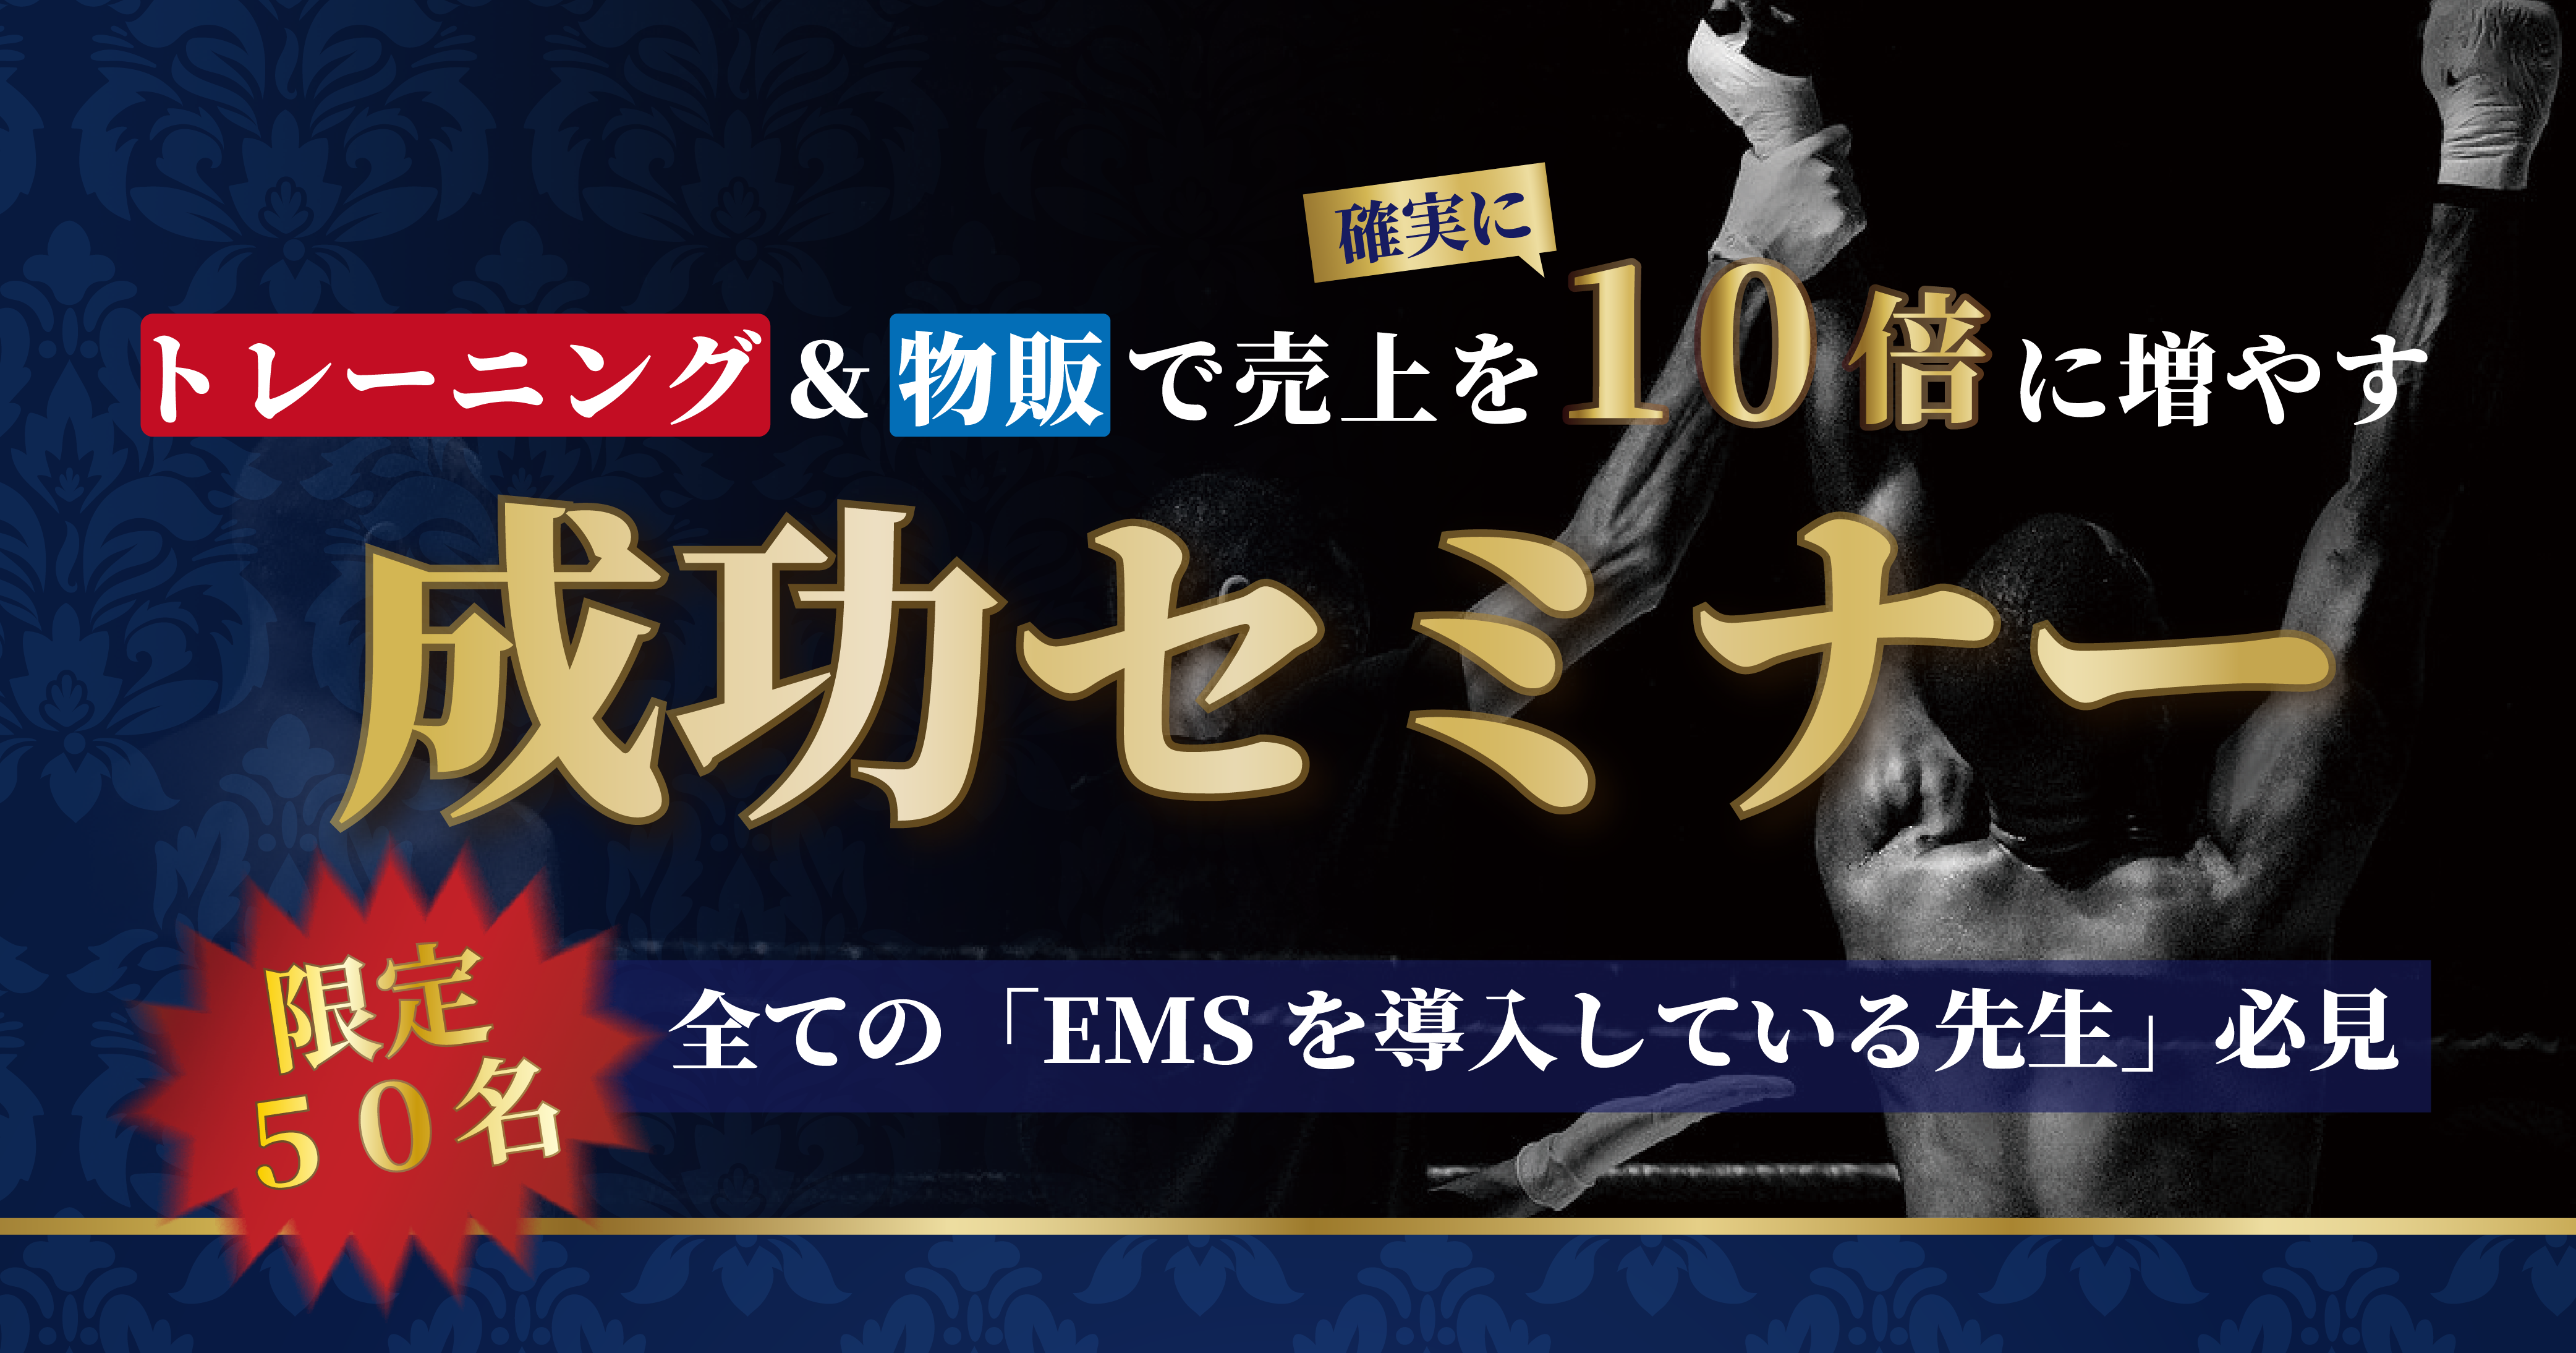 【2月2(日)東京】[EMSを導入している院様]トレーニング＆物販で売上を10倍に増やす成功セミナー